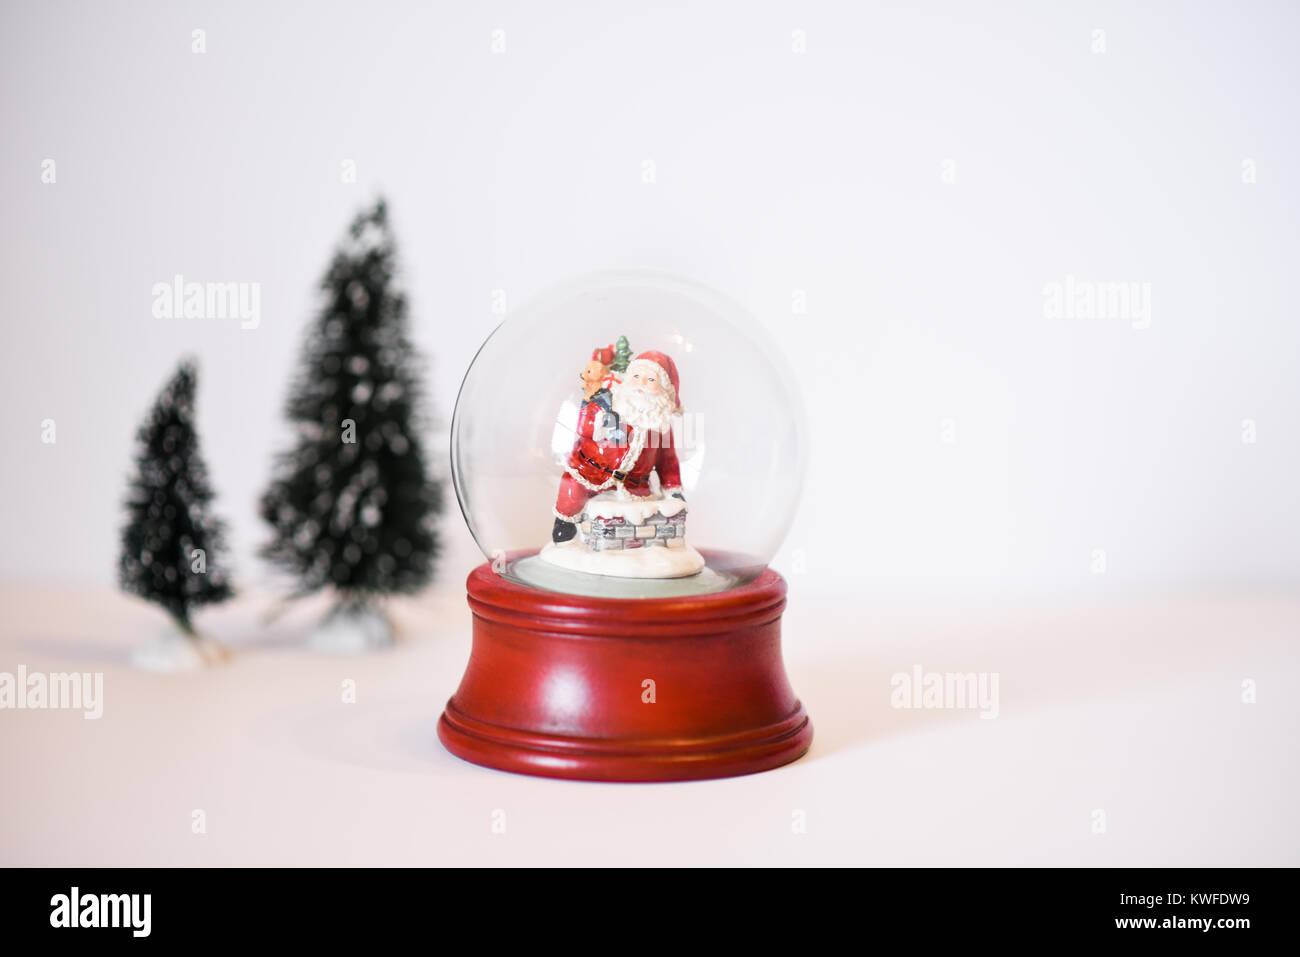 Eine Szene mit einem roten Schneekugel mit Santa Clause Abstieg der Schornstein Holding seinen Sack mit Geschenken und Weihnachtsbäume Stockfoto